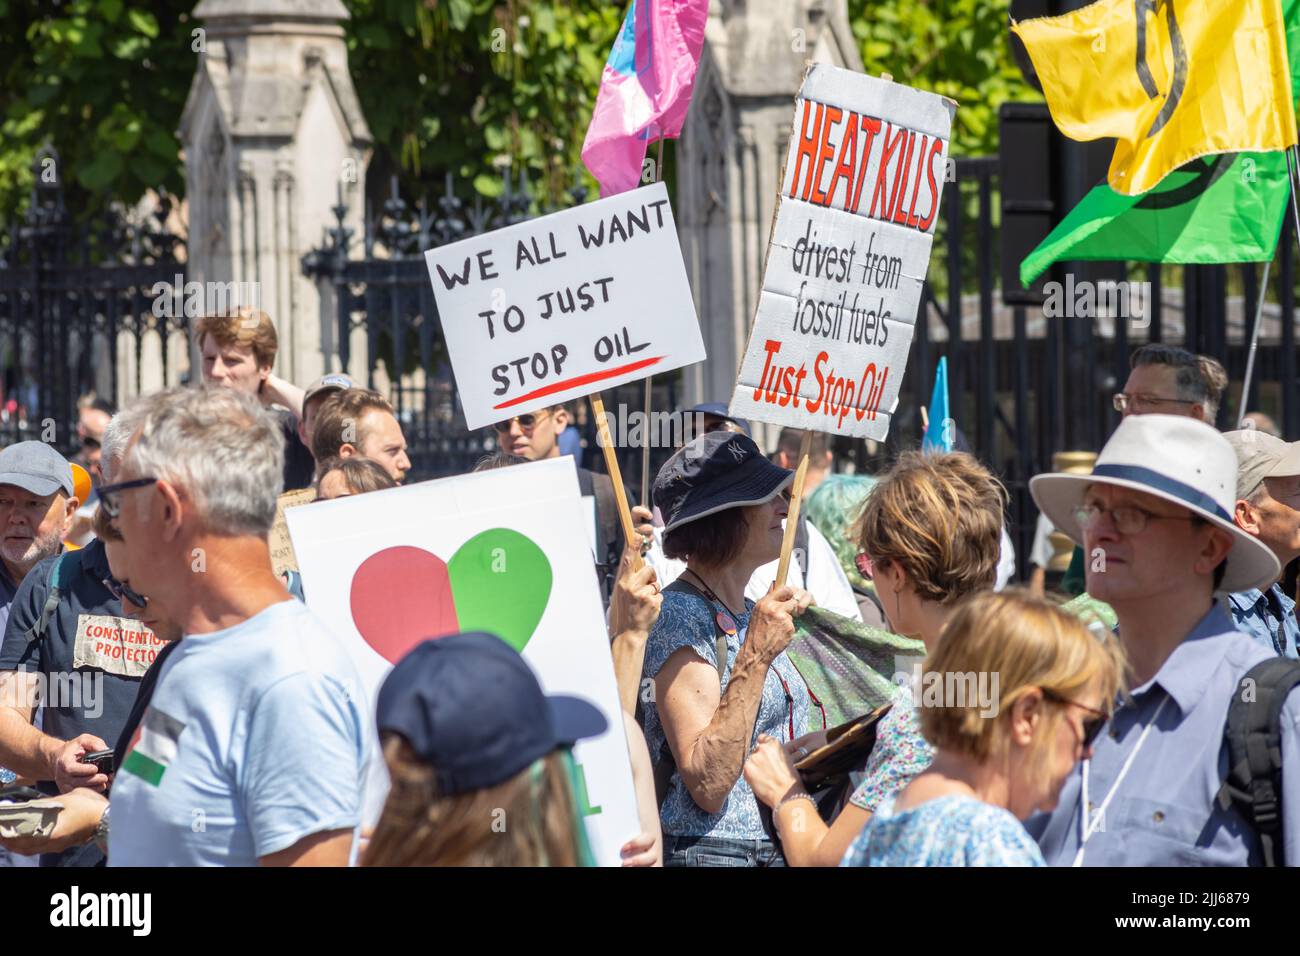 Londra, Inghilterra, Regno Unito 23-07-2022 tutto ciò che vogliamo è fermare il petrolio, il costo della vita e la crisi climatica protesta. Gli attivisti della ribellione dell'estinzione, basta fermare il petrolio e isolare la Gran Bretagna uniscono le forze per protestare contro le Camere del Parlamento Foto Stock